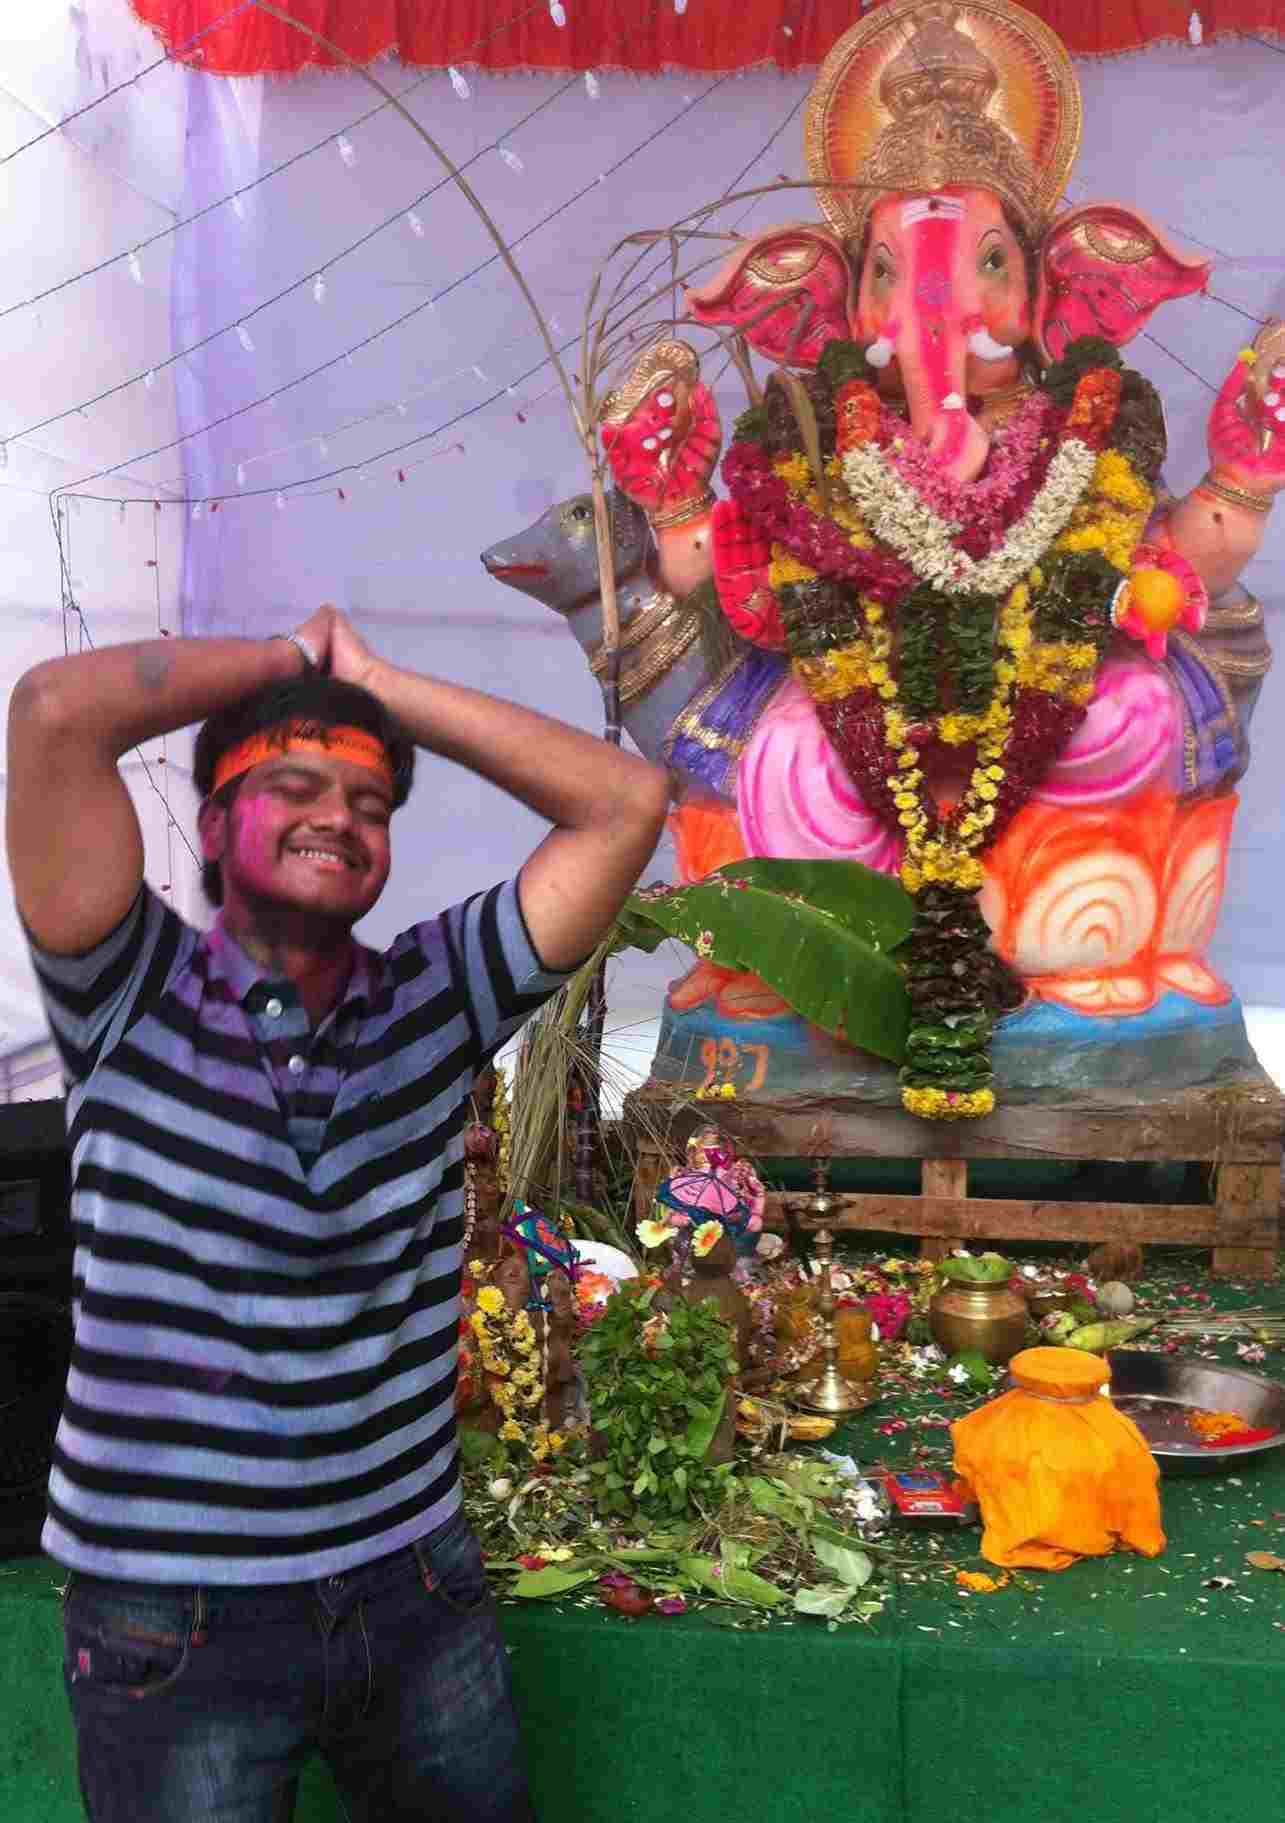 भगवान गणेश की मूर्ति के साथ डीक सनी